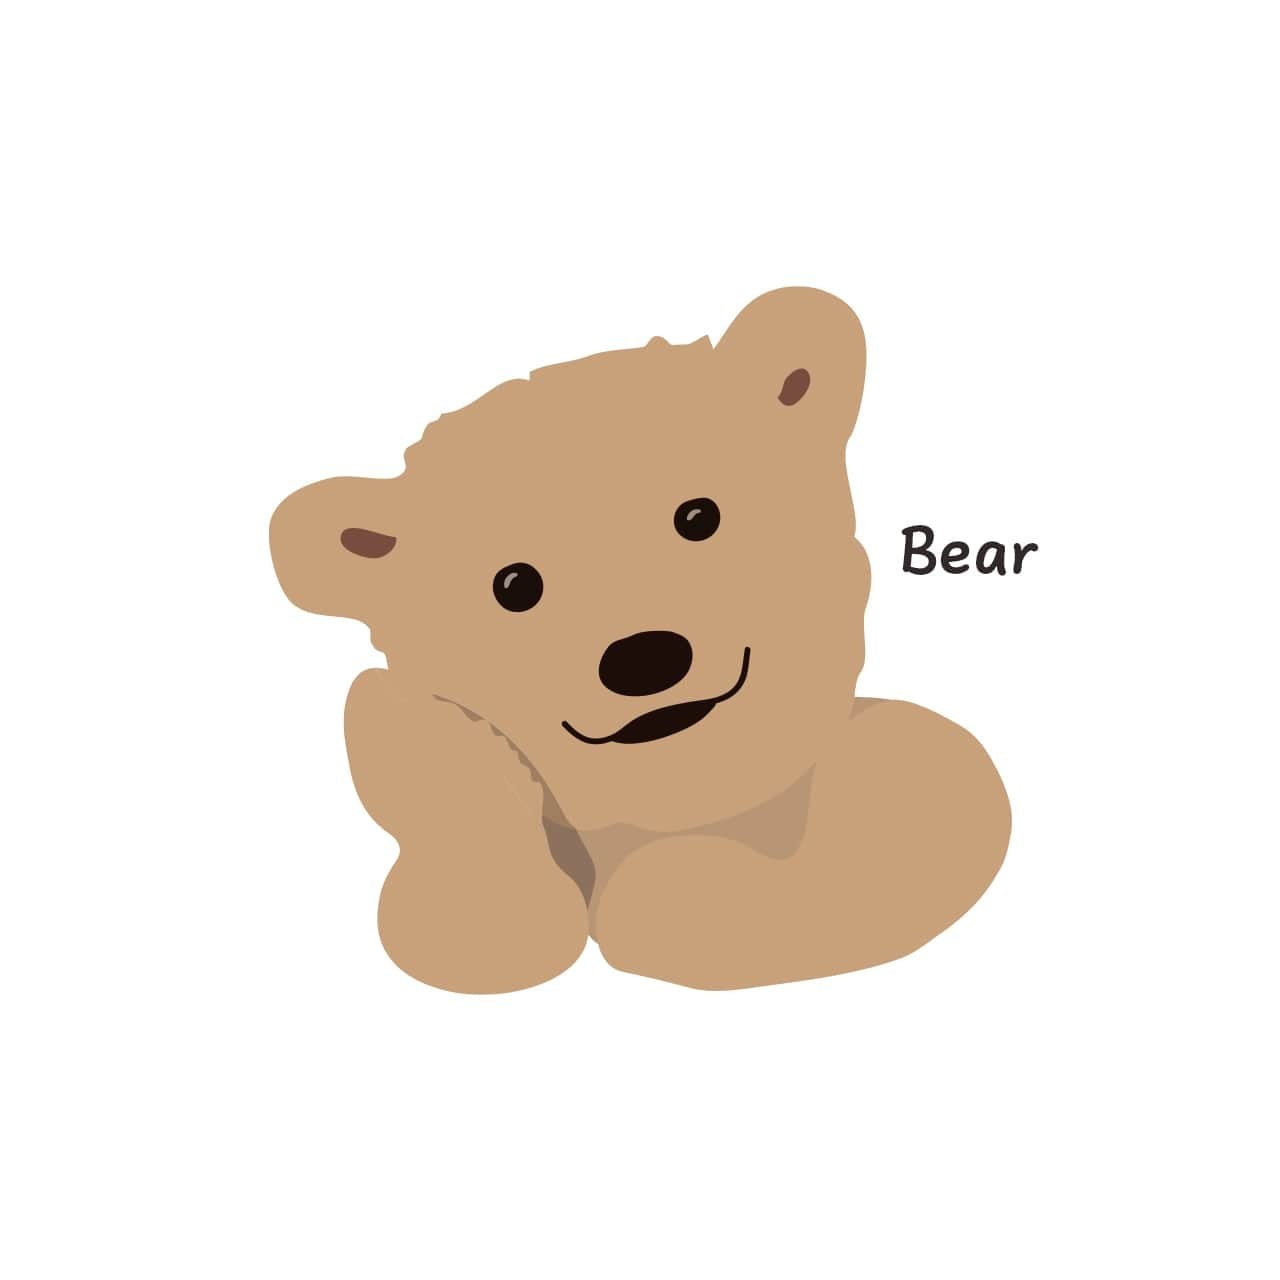 韓国 スマホケース Bear かわいい くま イラスト キャラクター デザイナーズ Iphone Android 携帯カバー 熊 ベアー ピンク B03 韓国スマホケース専門店 Korean Case